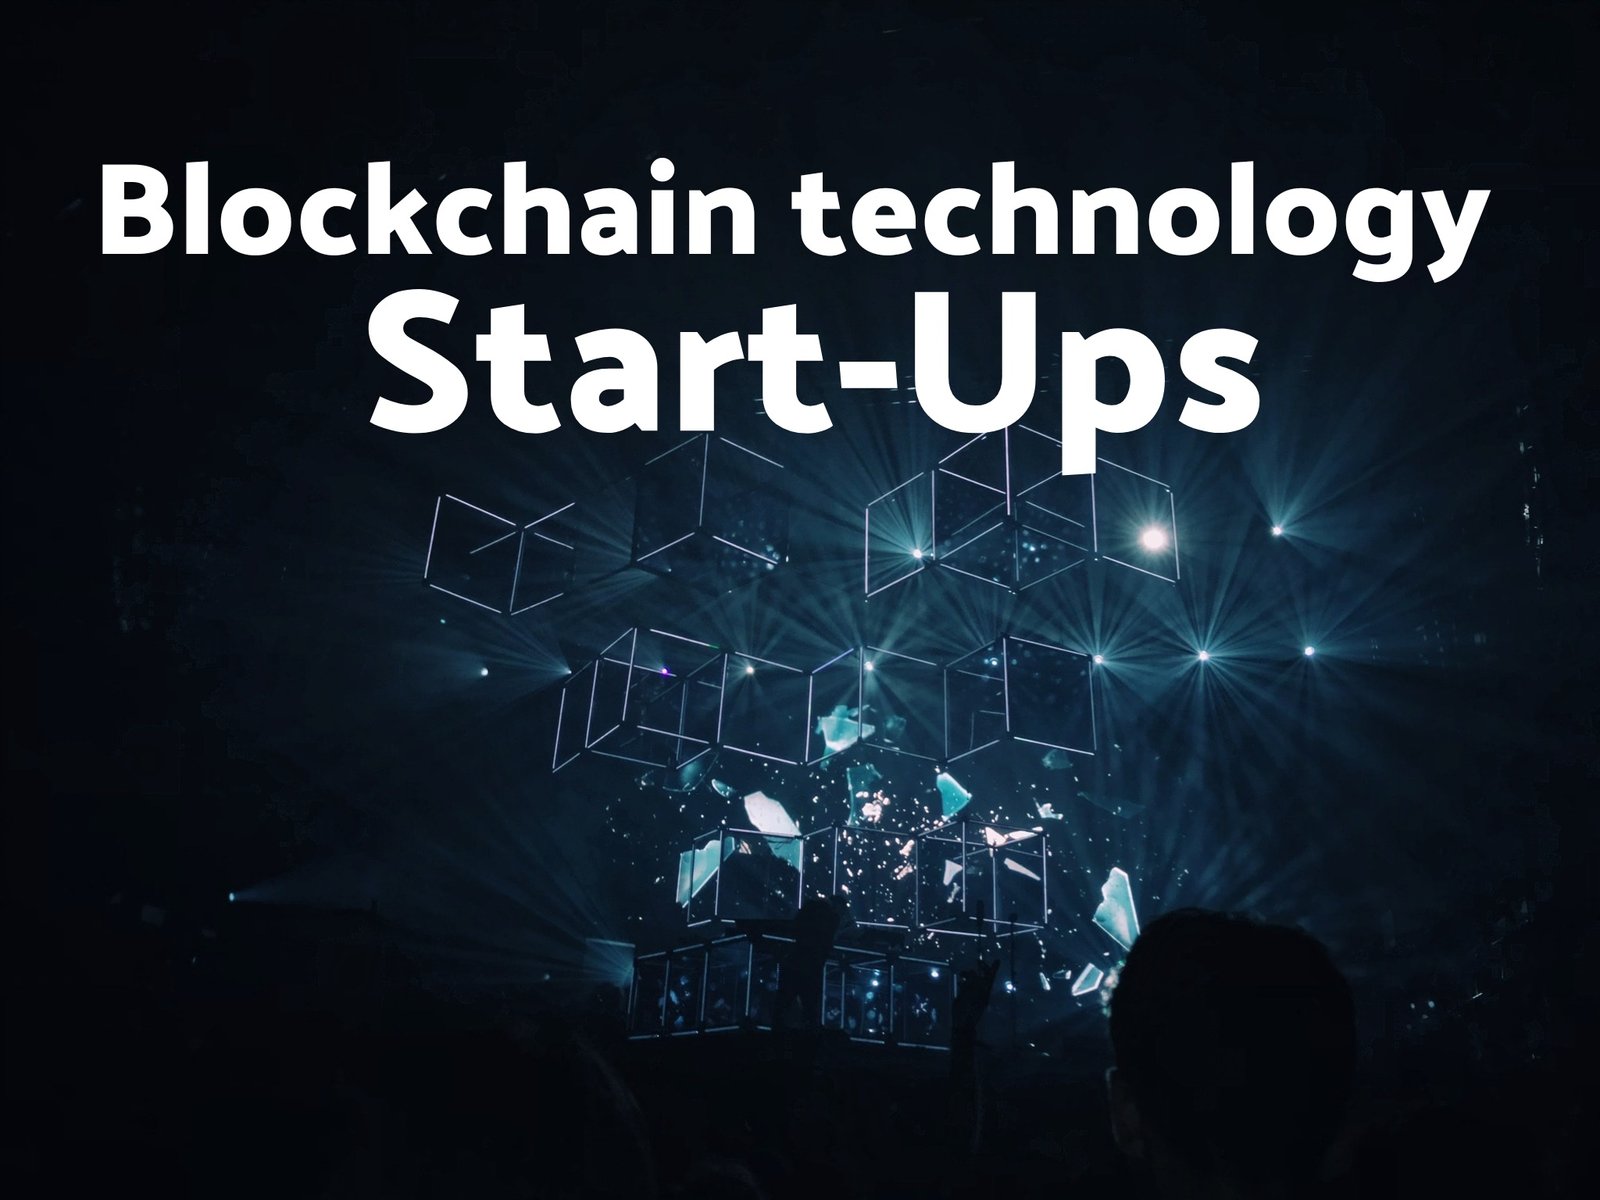 Blockchain Technology Startups in India